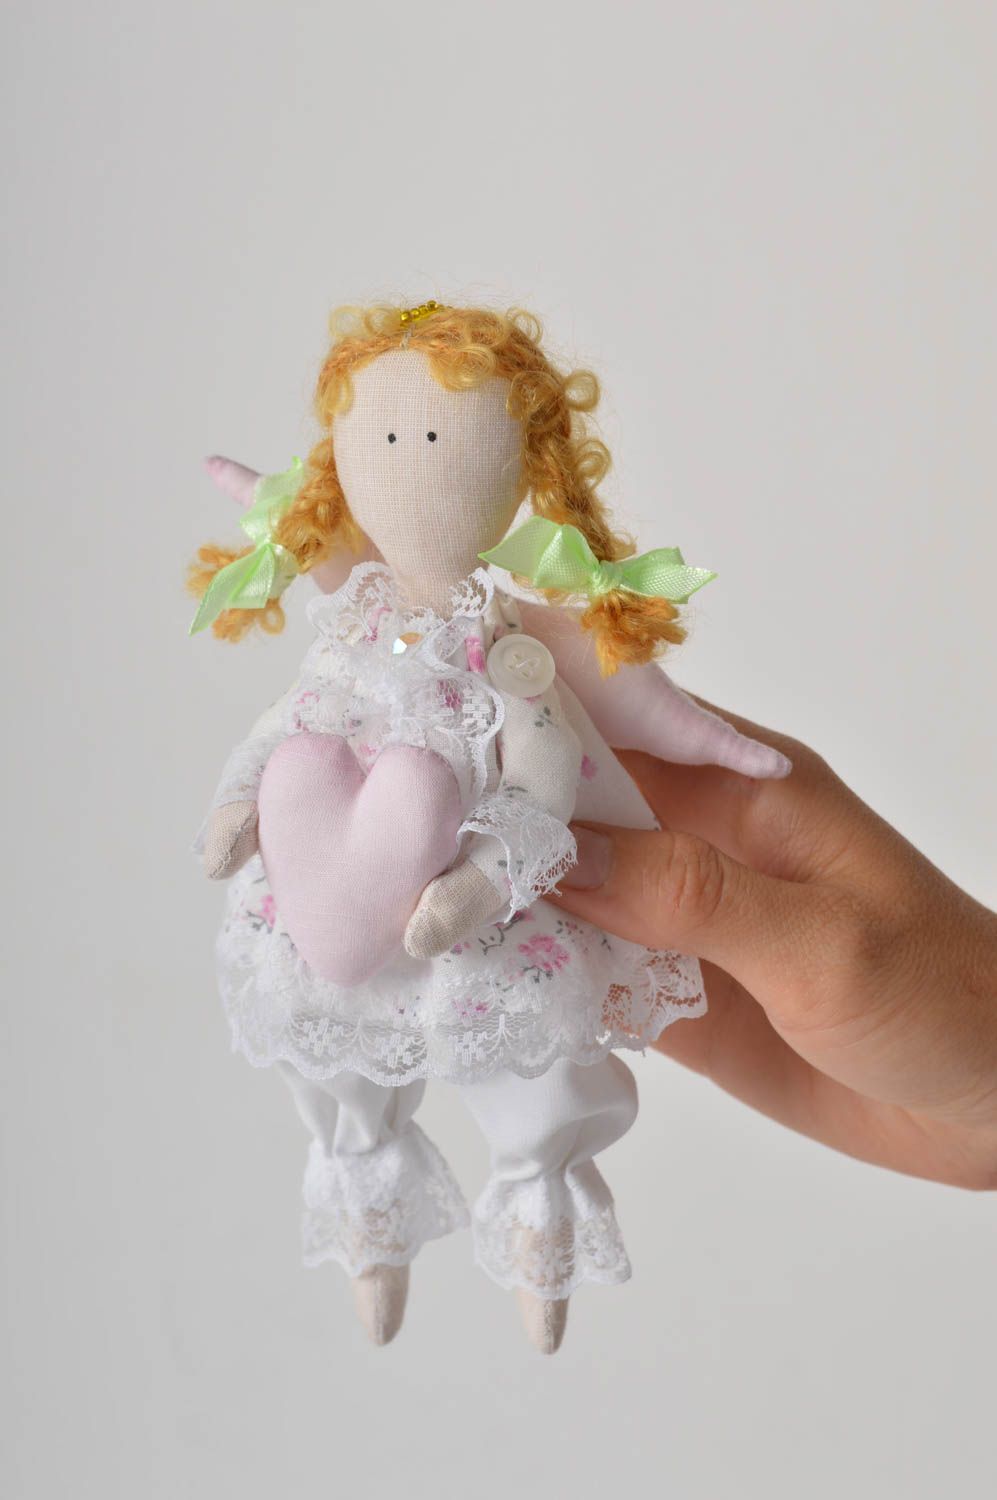 Handmade doll designer doll for baby fabric doll gift for girl nursery decor photo 5